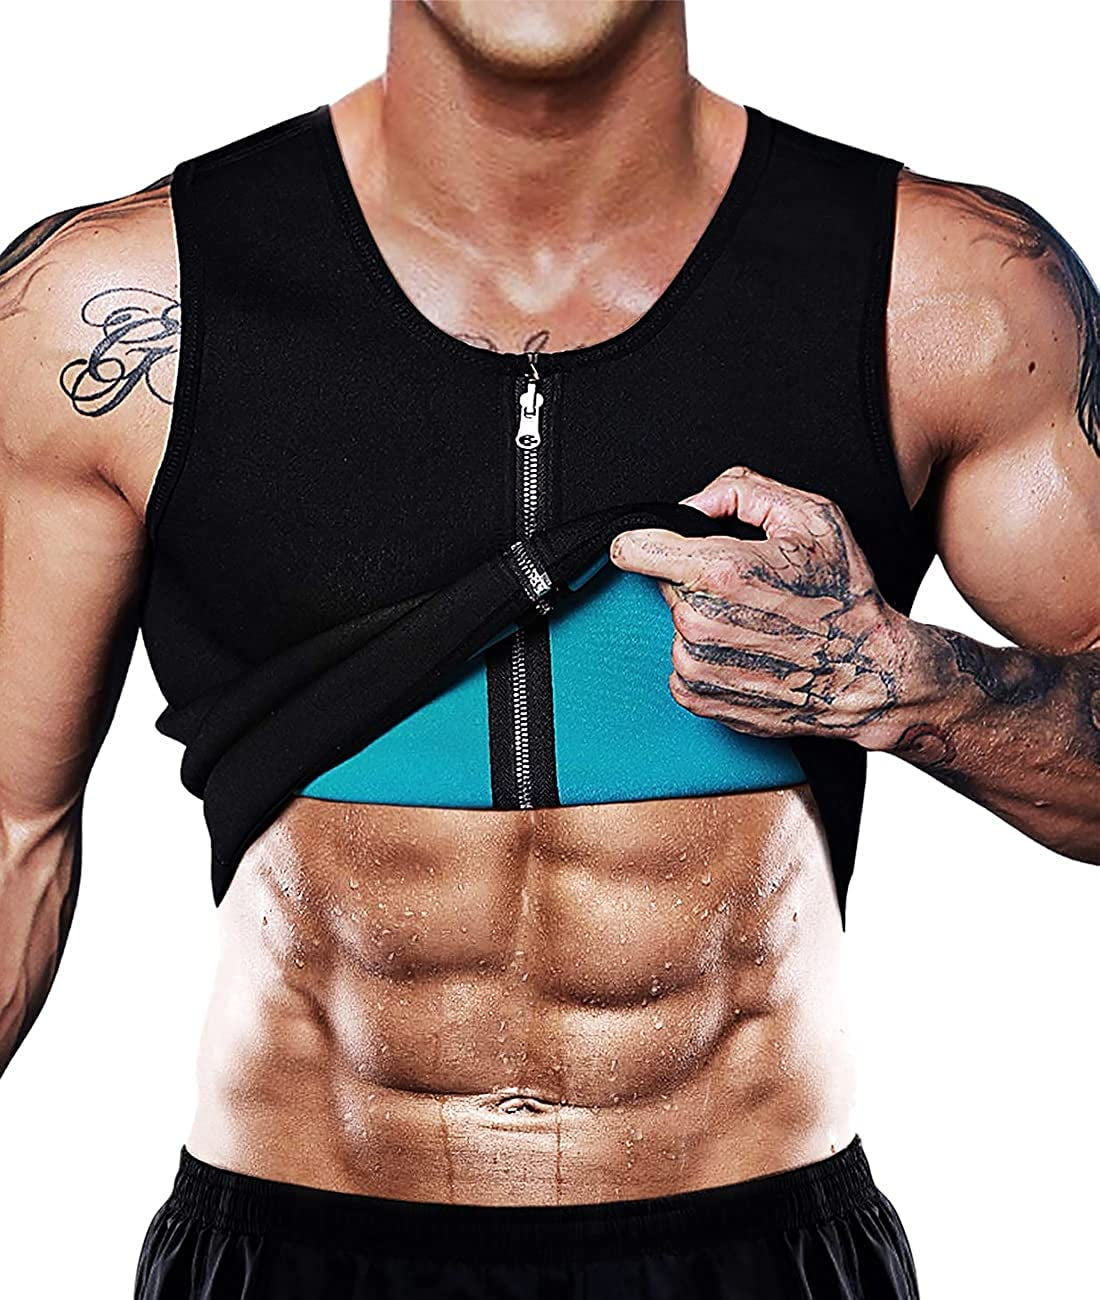 Men's Sauna Vest: Heat-Inducing Waist Trainer Corset - Neoprene Tank Top for Shapewear, Slimming & Workout